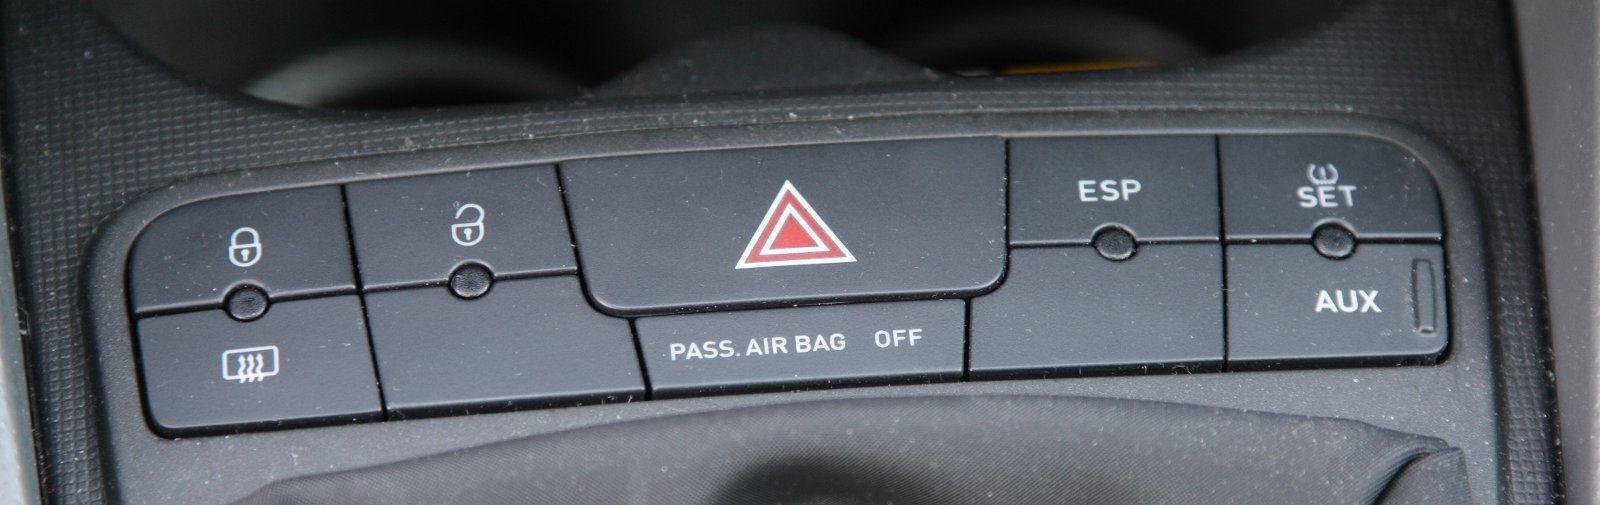 Schakelaar midden console 1. Vergrendelen / ontgrendelen portieren. 2. Alarmlichten. 3. Achterruitverwarming. 4. Indicatie uitgeschakelde passagiers airbag.